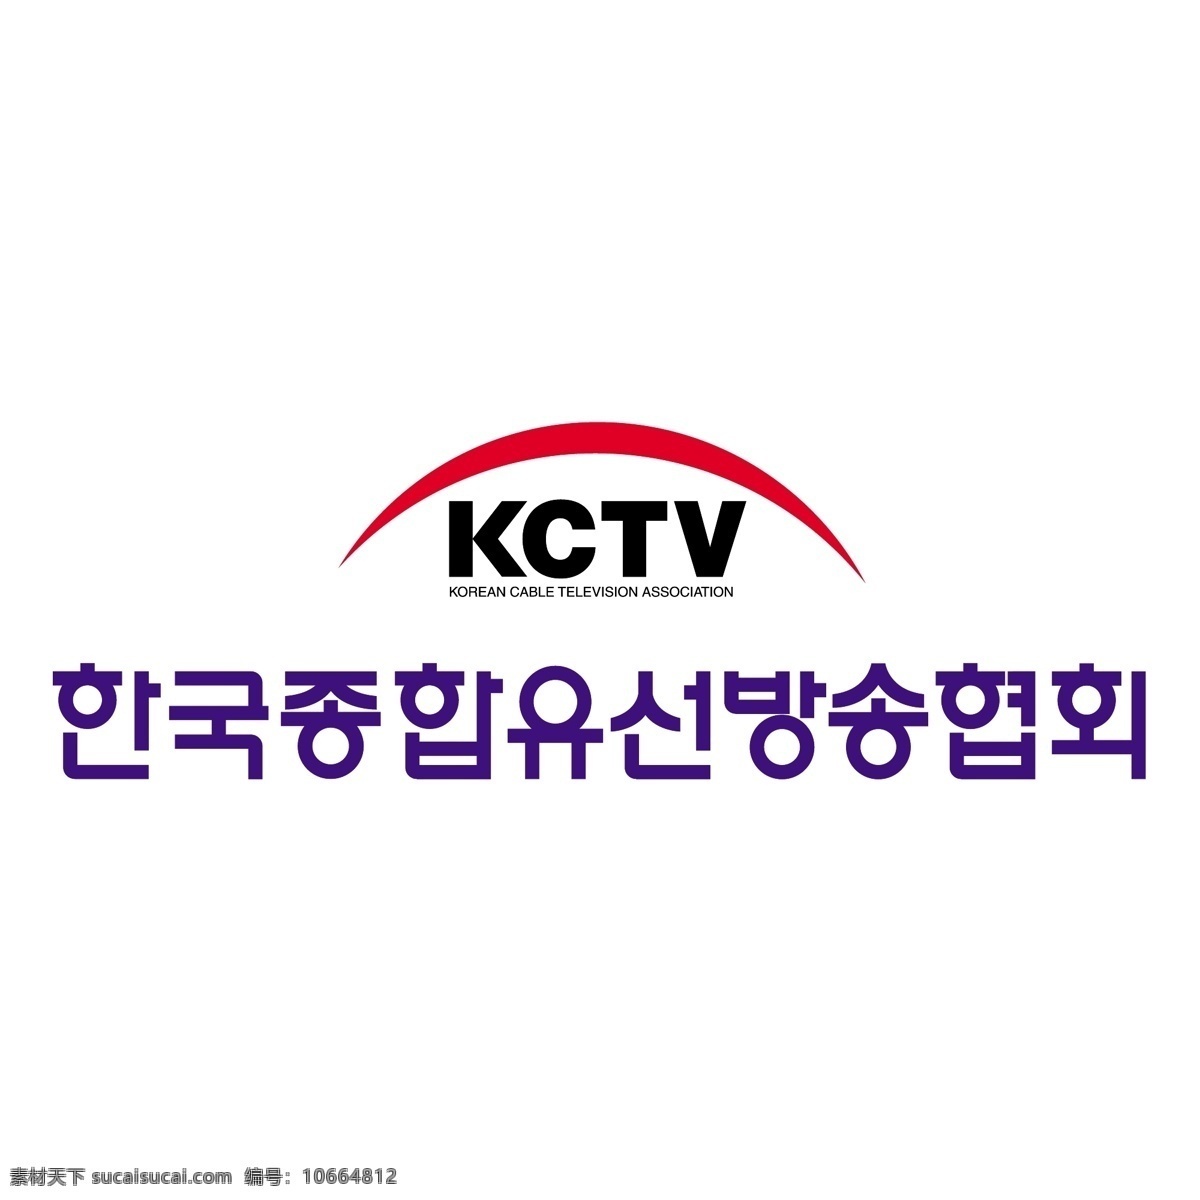 朝鲜中央电视台 自由 标志 标识 psd源文件 logo设计